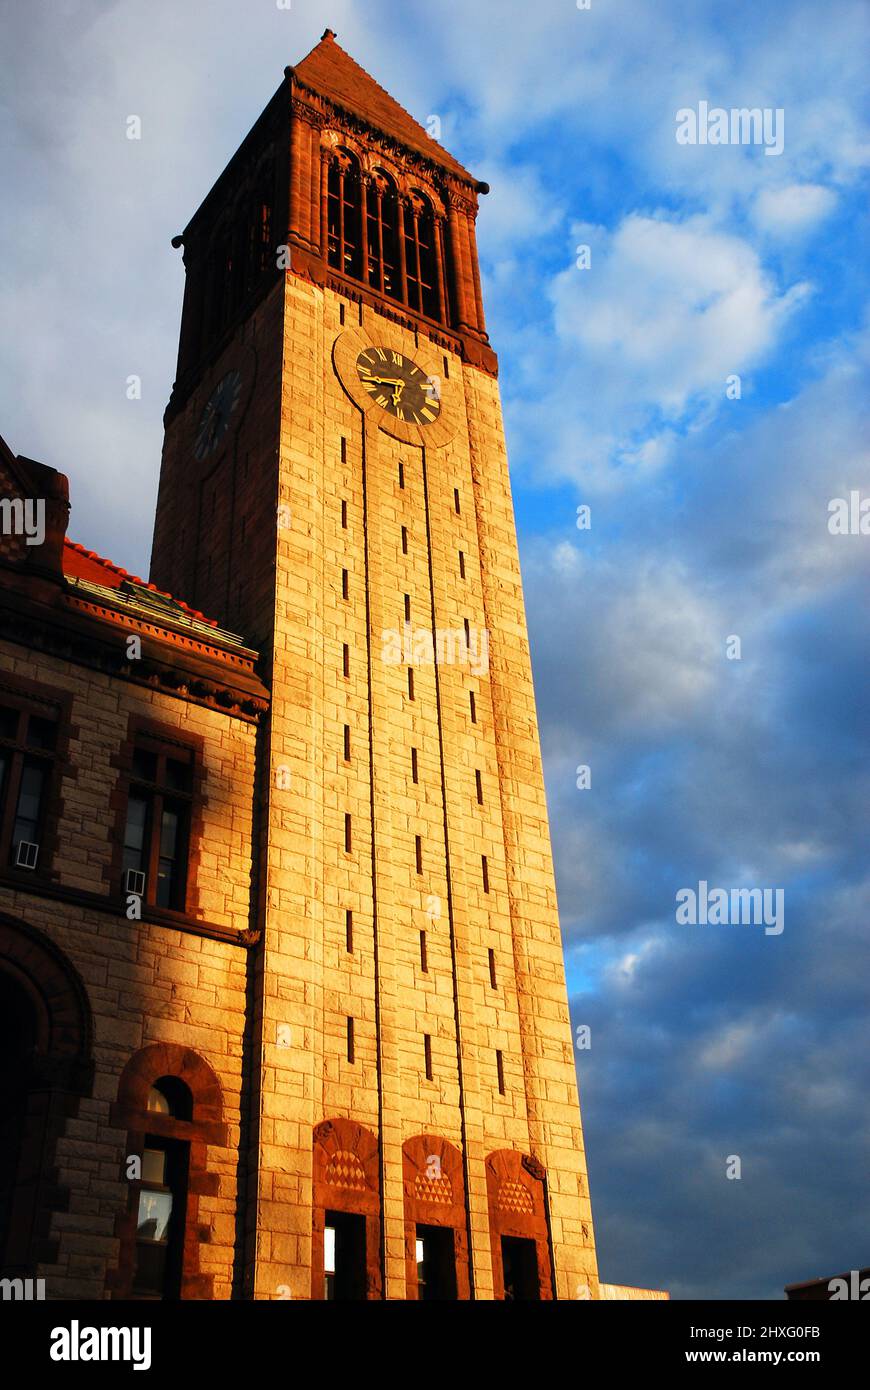 City Hall of Albany, New York Stock Photo